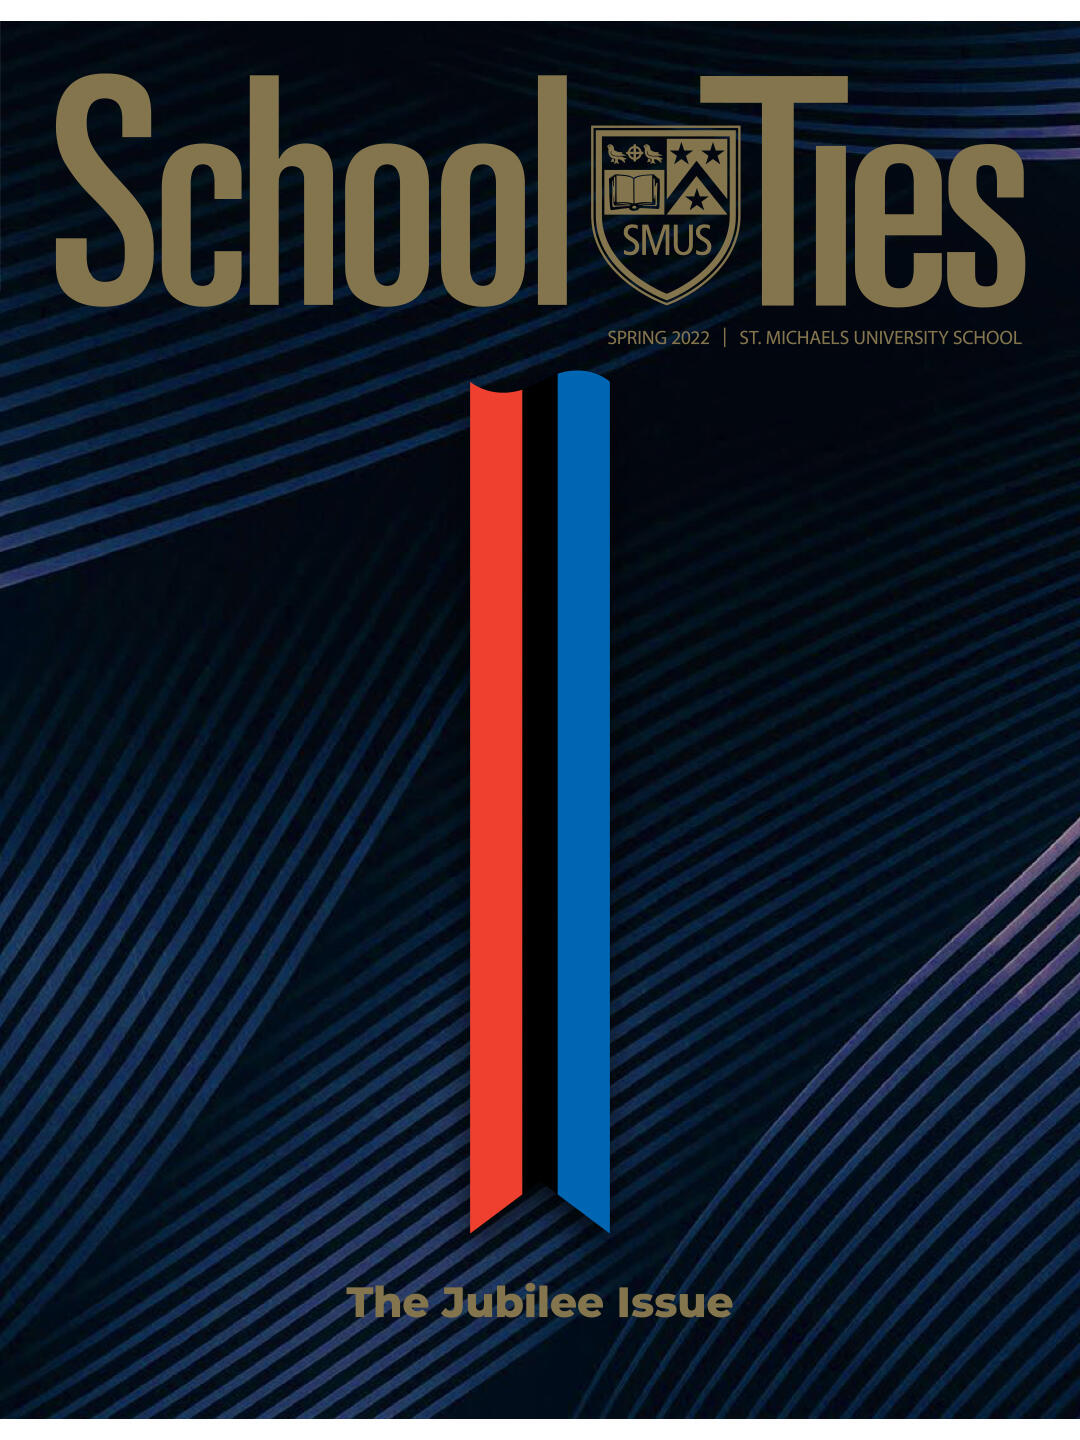 School Ties Spring 2020 cover